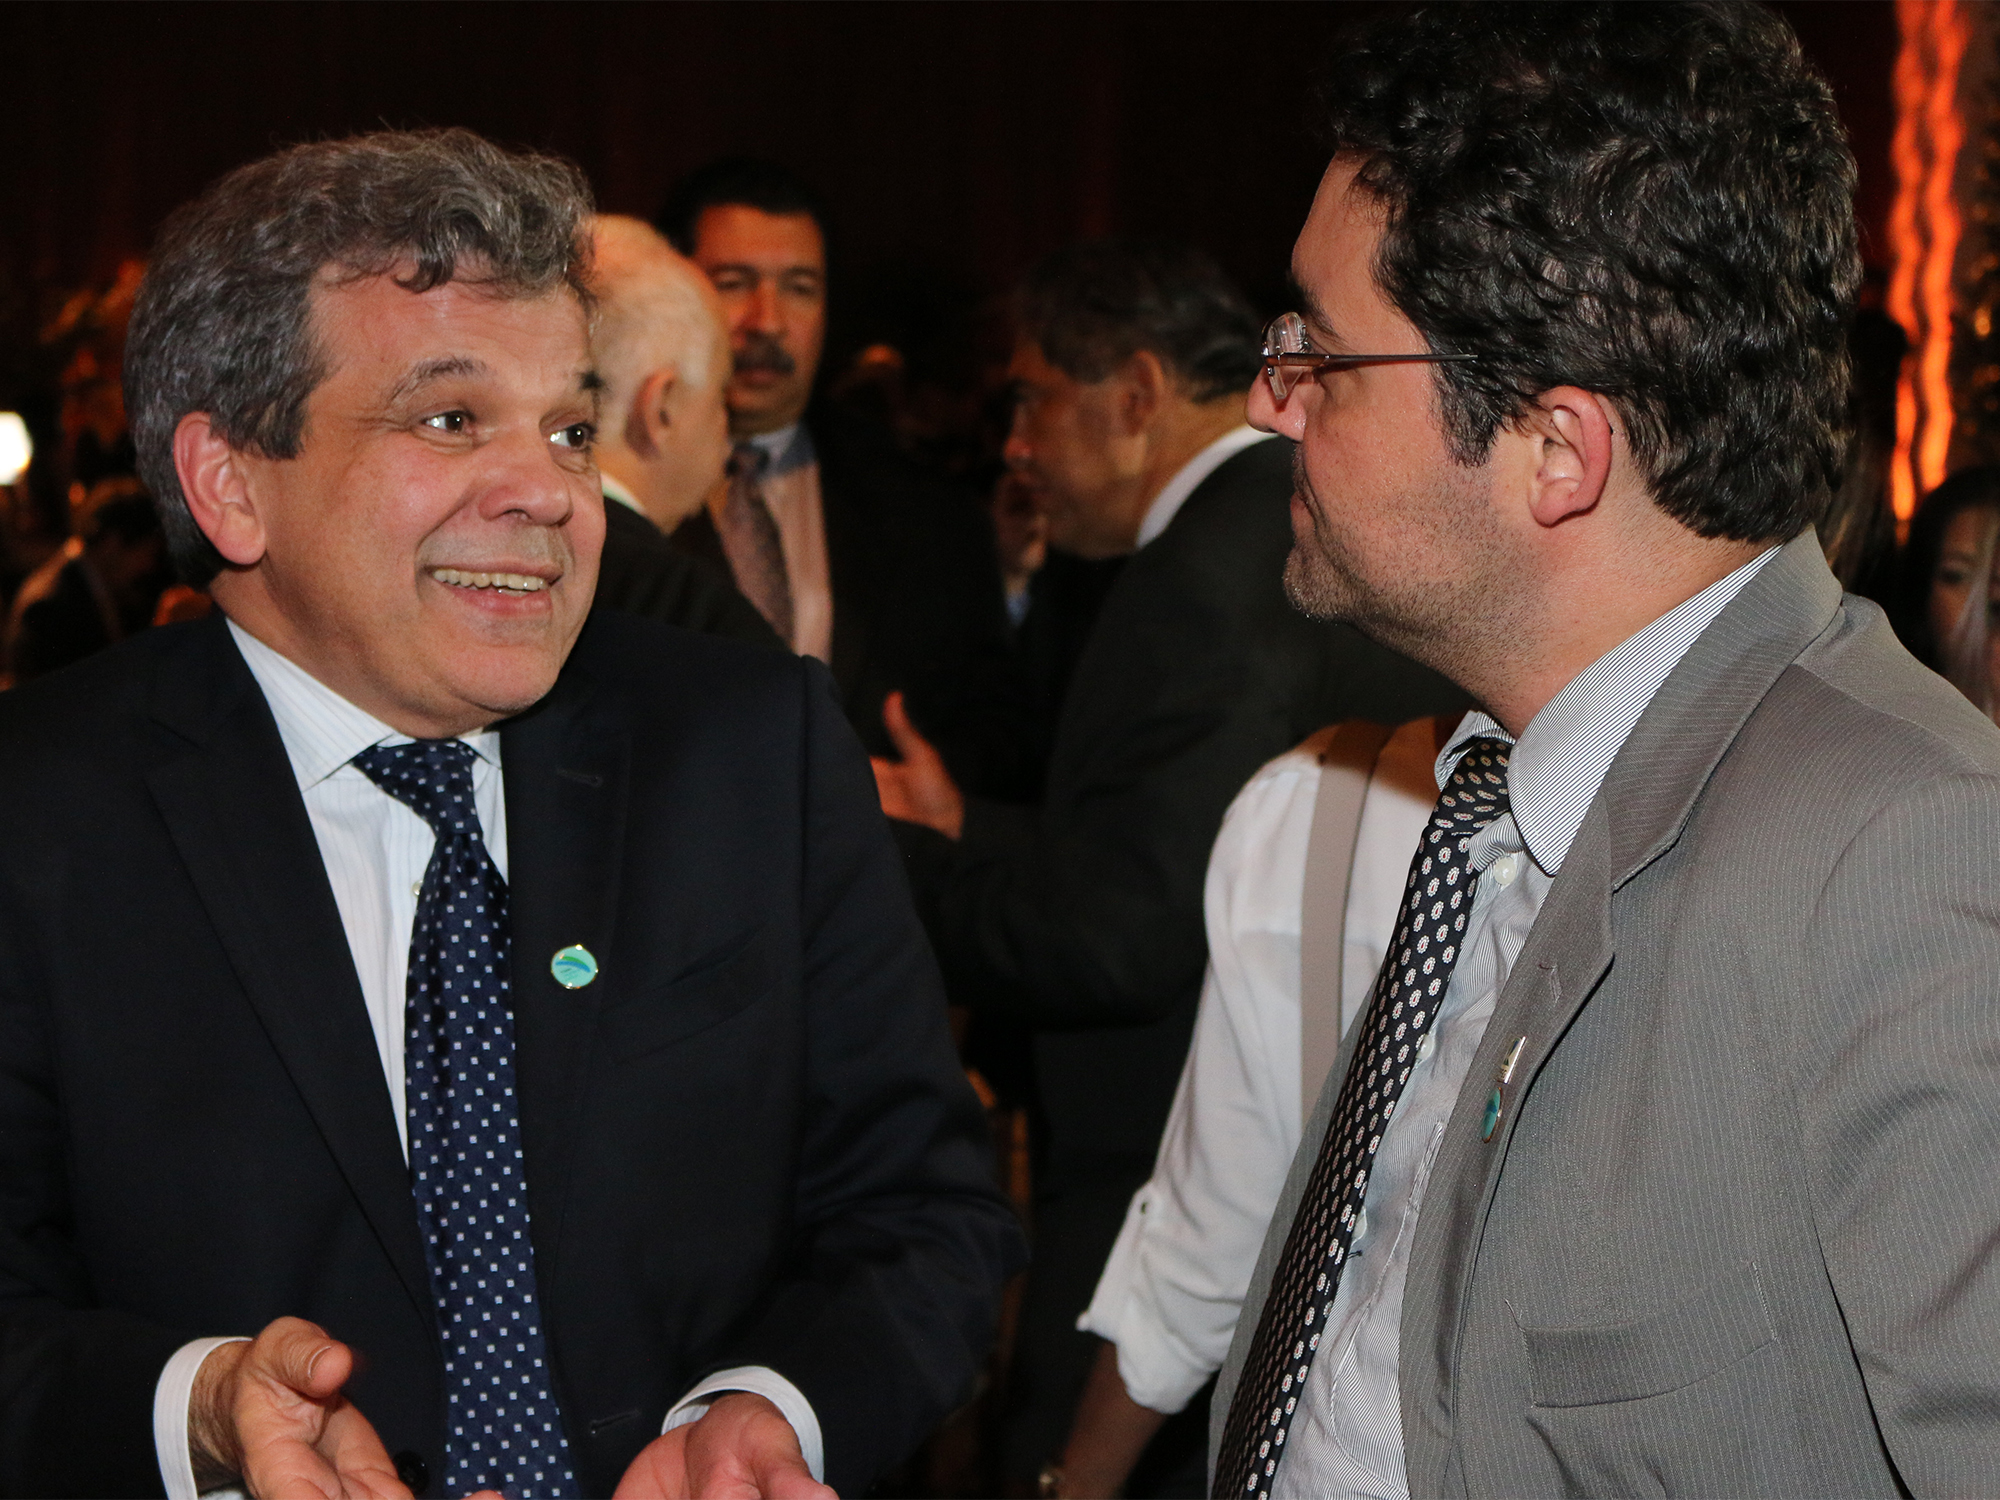  Floriano Martins de Sá Neto, Presidente da ANFIP, em conversa com o Presidente da ANESP. 